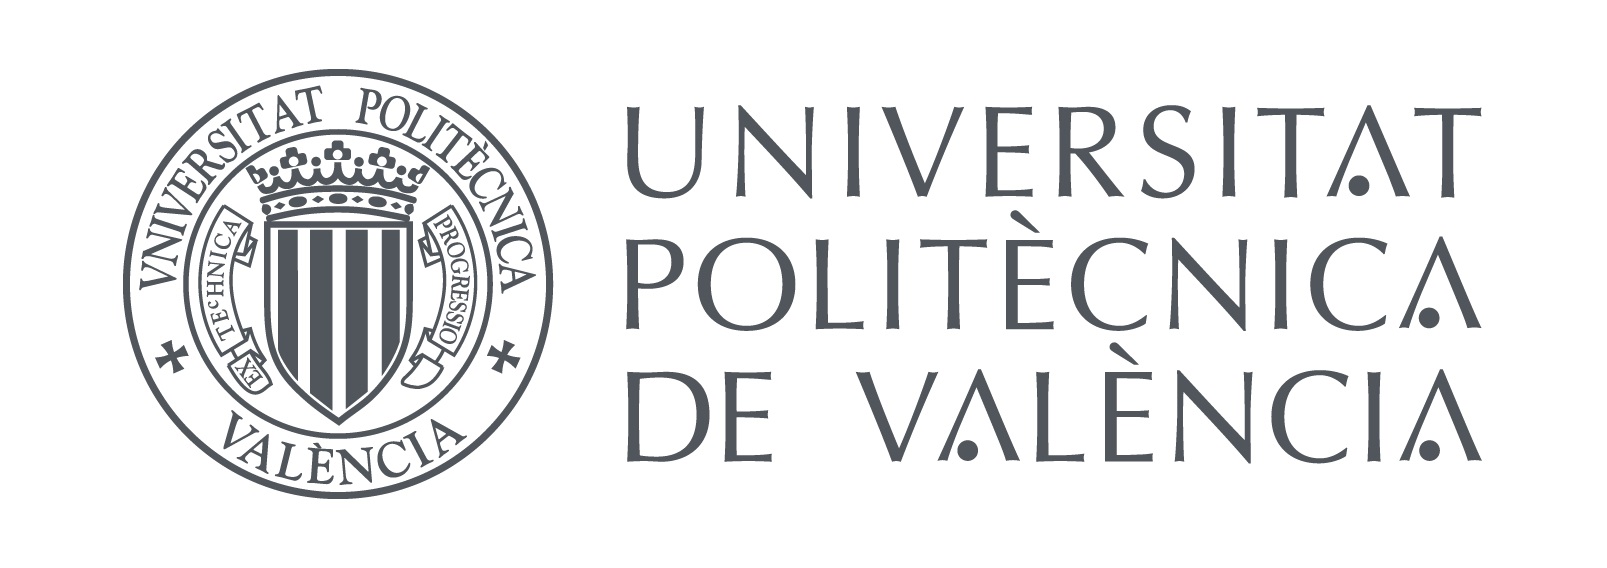 logo universidad politecnica valencia